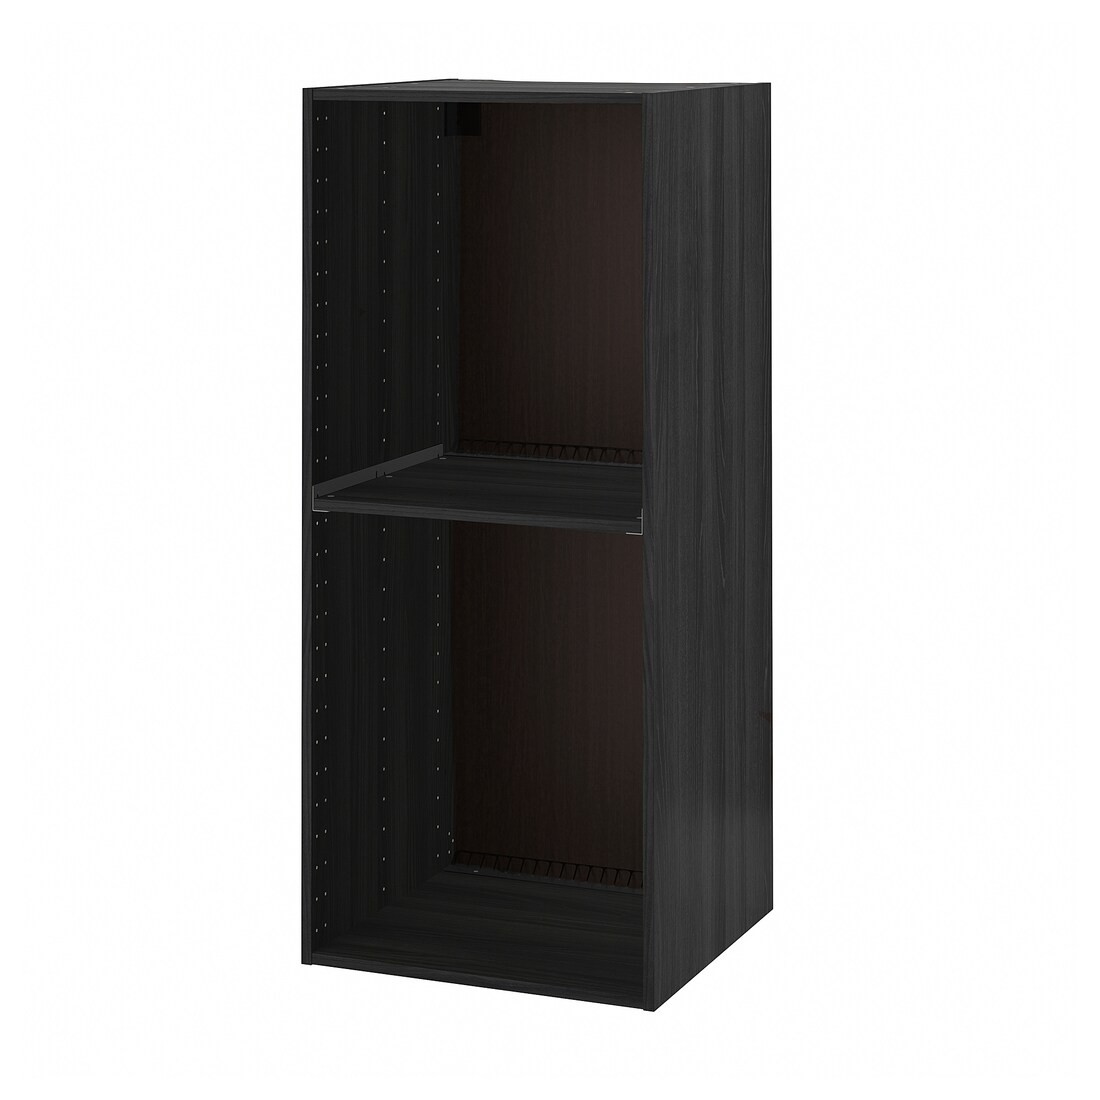 METOD МЕТОД Висока шафа для холодильника / духовки, імітація дерева чорний, 60x60x140 см